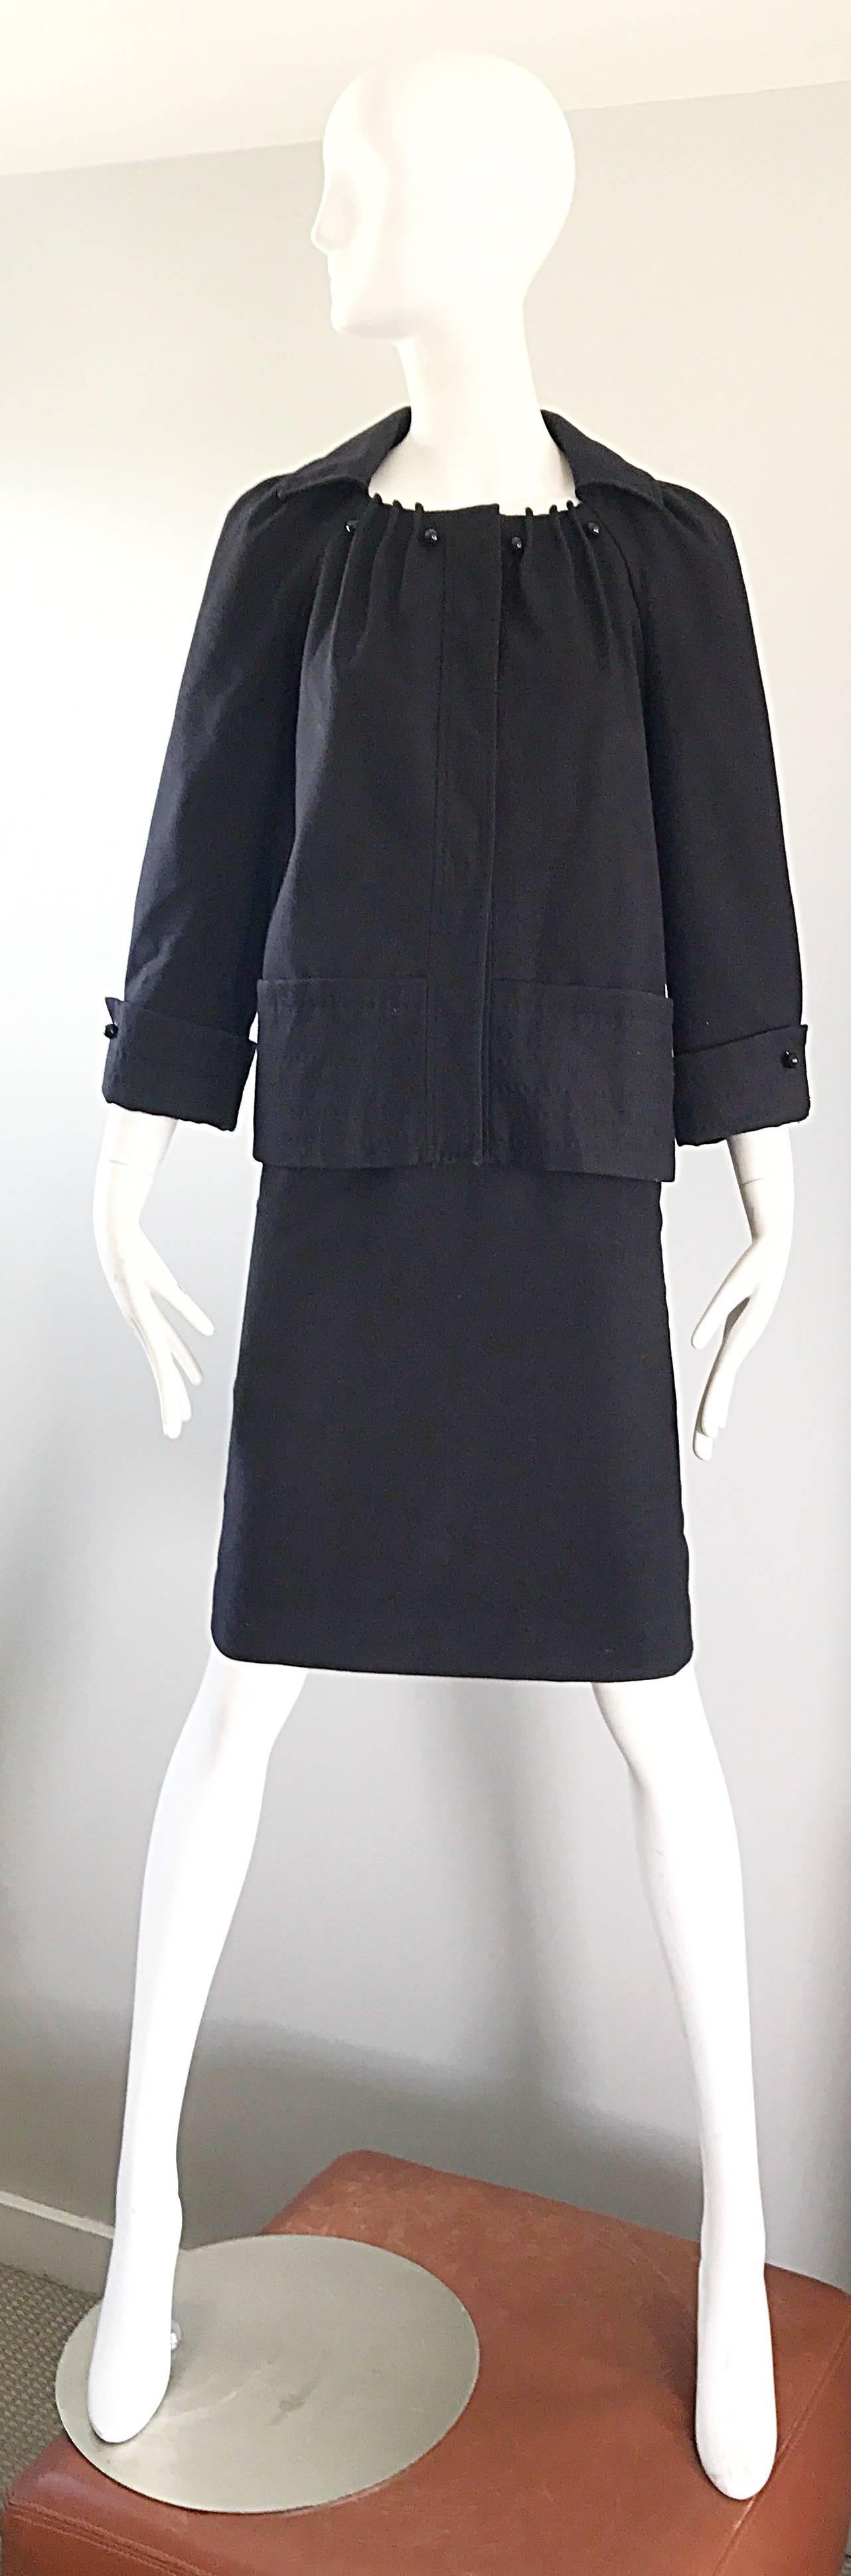 Classique et chic tailleur jupe en laine vierge noire ALBERTA FERRETTI des années 90-60 ! La veste présente une silhouette en forme de boîte à pilules / swing. Détails plissés autour du col, avec des boutons ronds en laque noire. Grandes pressions